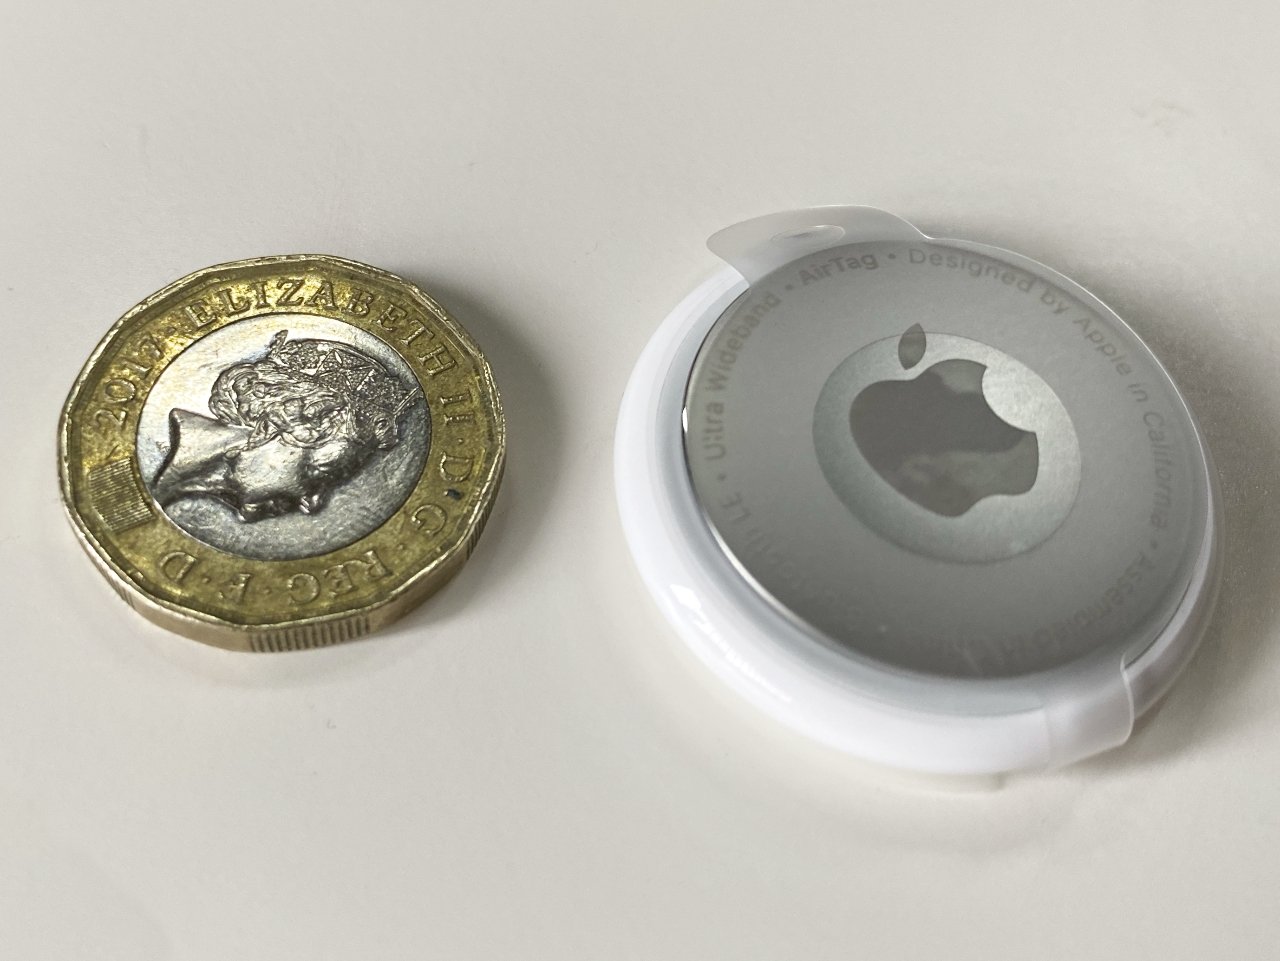 An AirTag next to a British pound coin